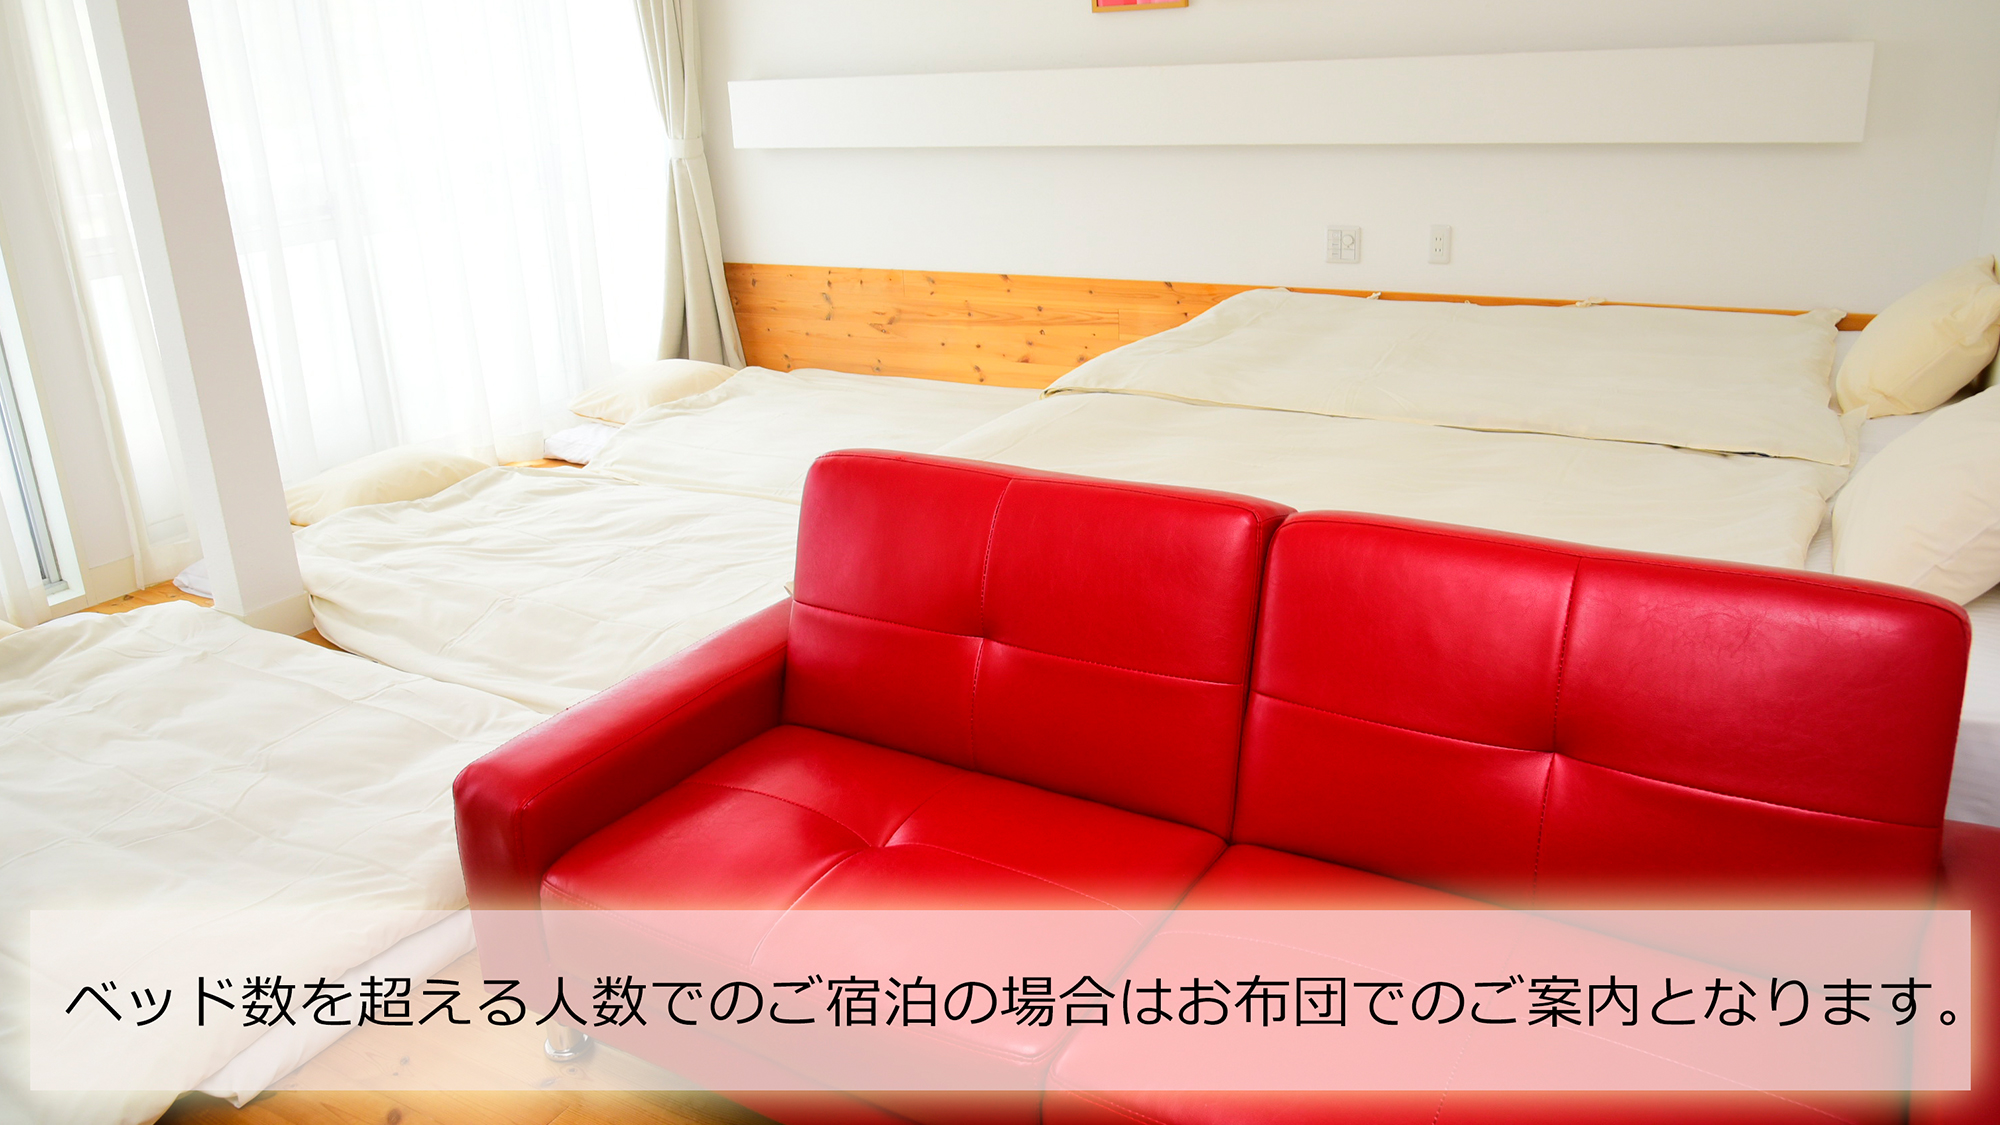 ベッド数を超える人数でのご宿泊の場合はお布団のご提供となります。